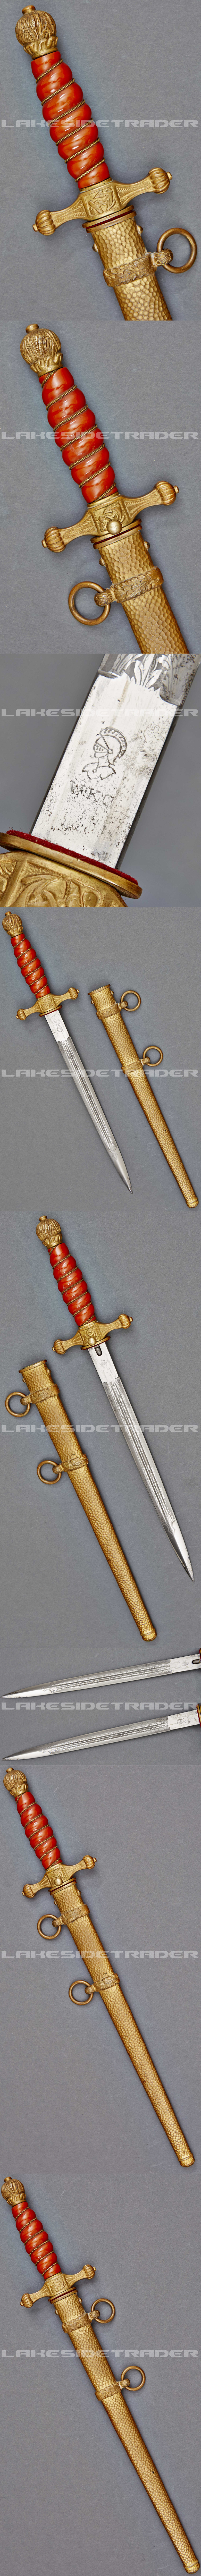 1st Model Dagger for Naval Officer